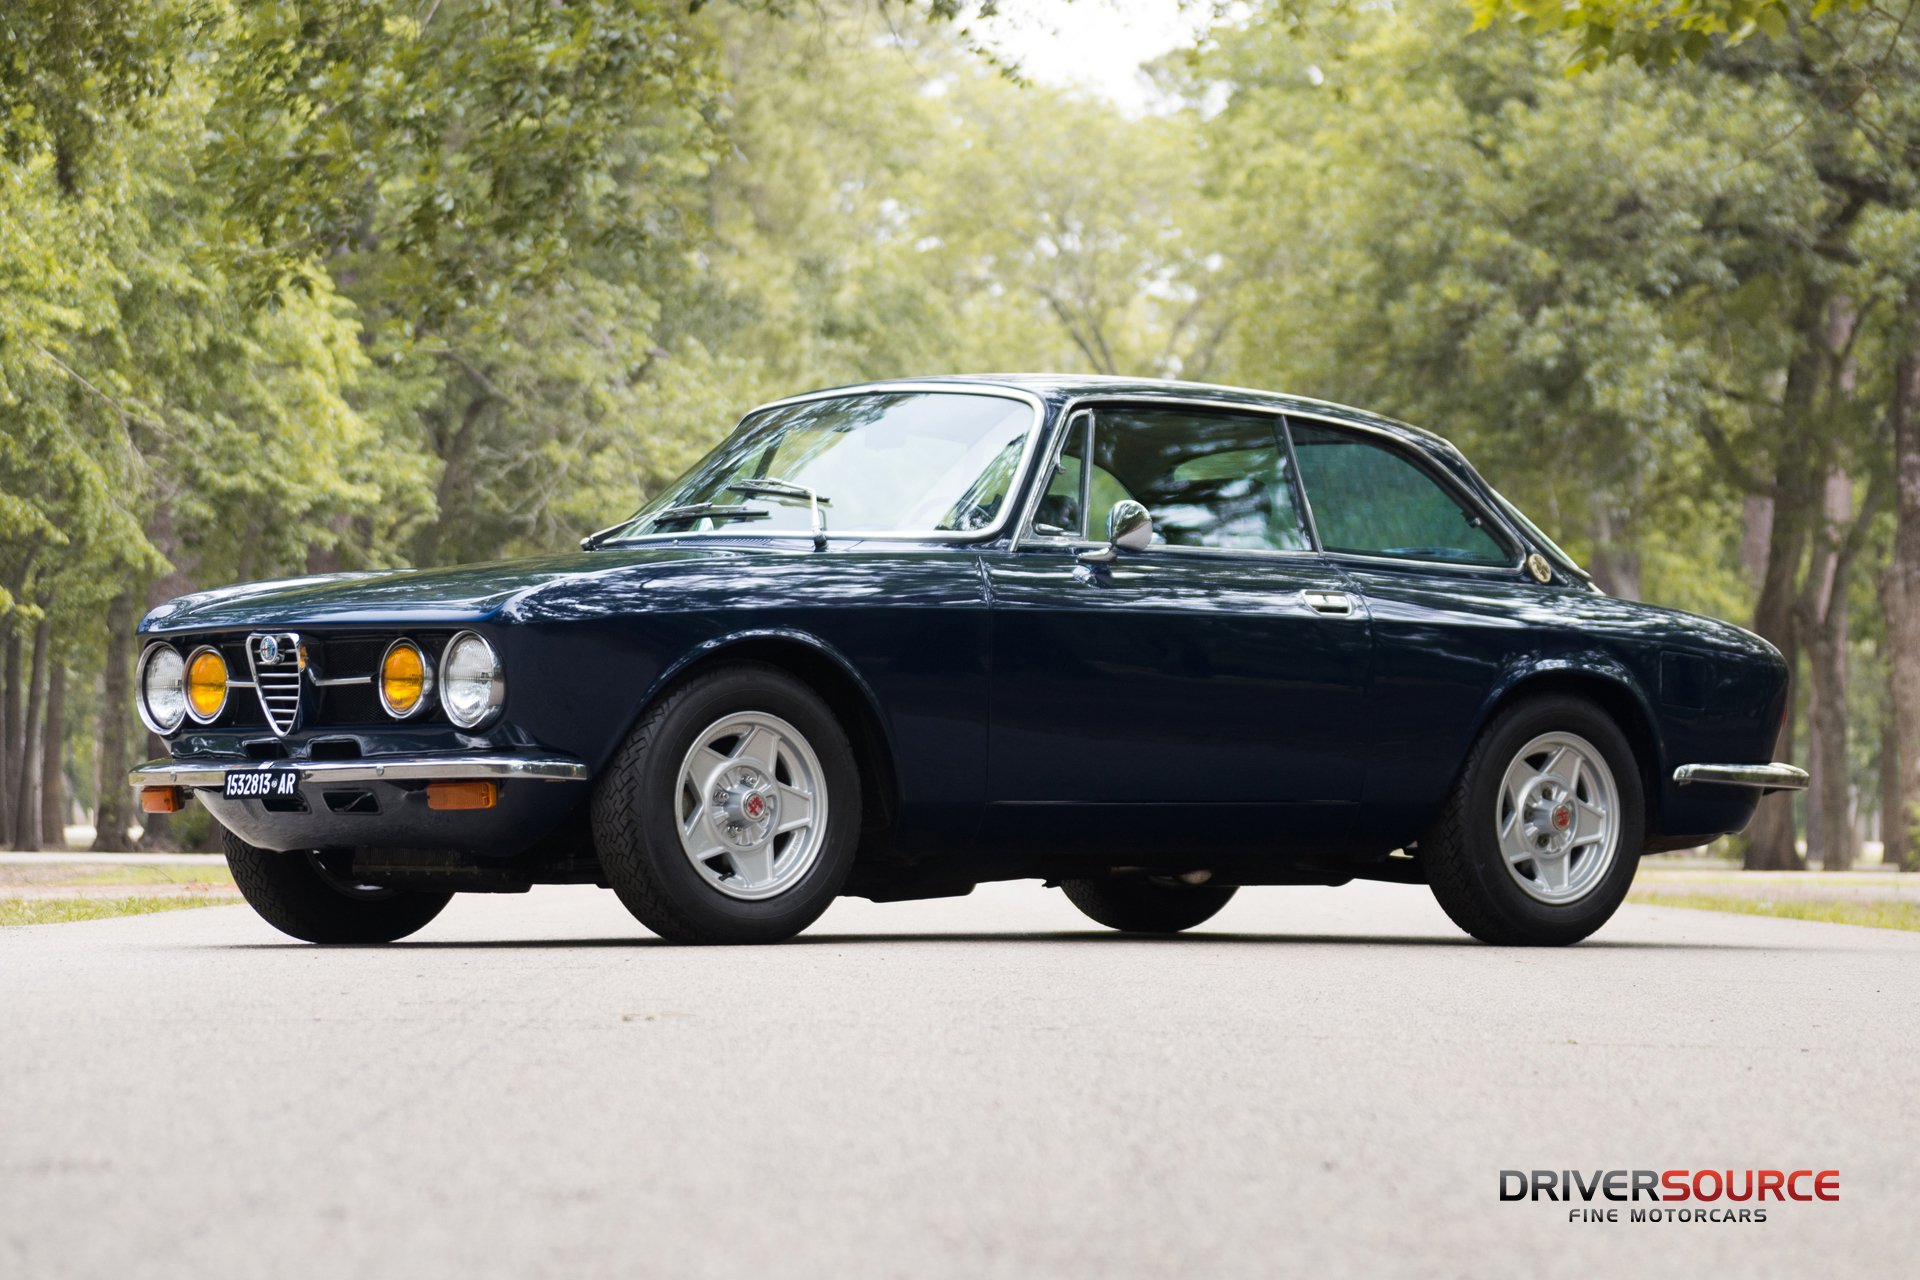 1971 Alfa Romeo Gtv 1750 | Driversource : Fine Motorcars | Houston, Tx